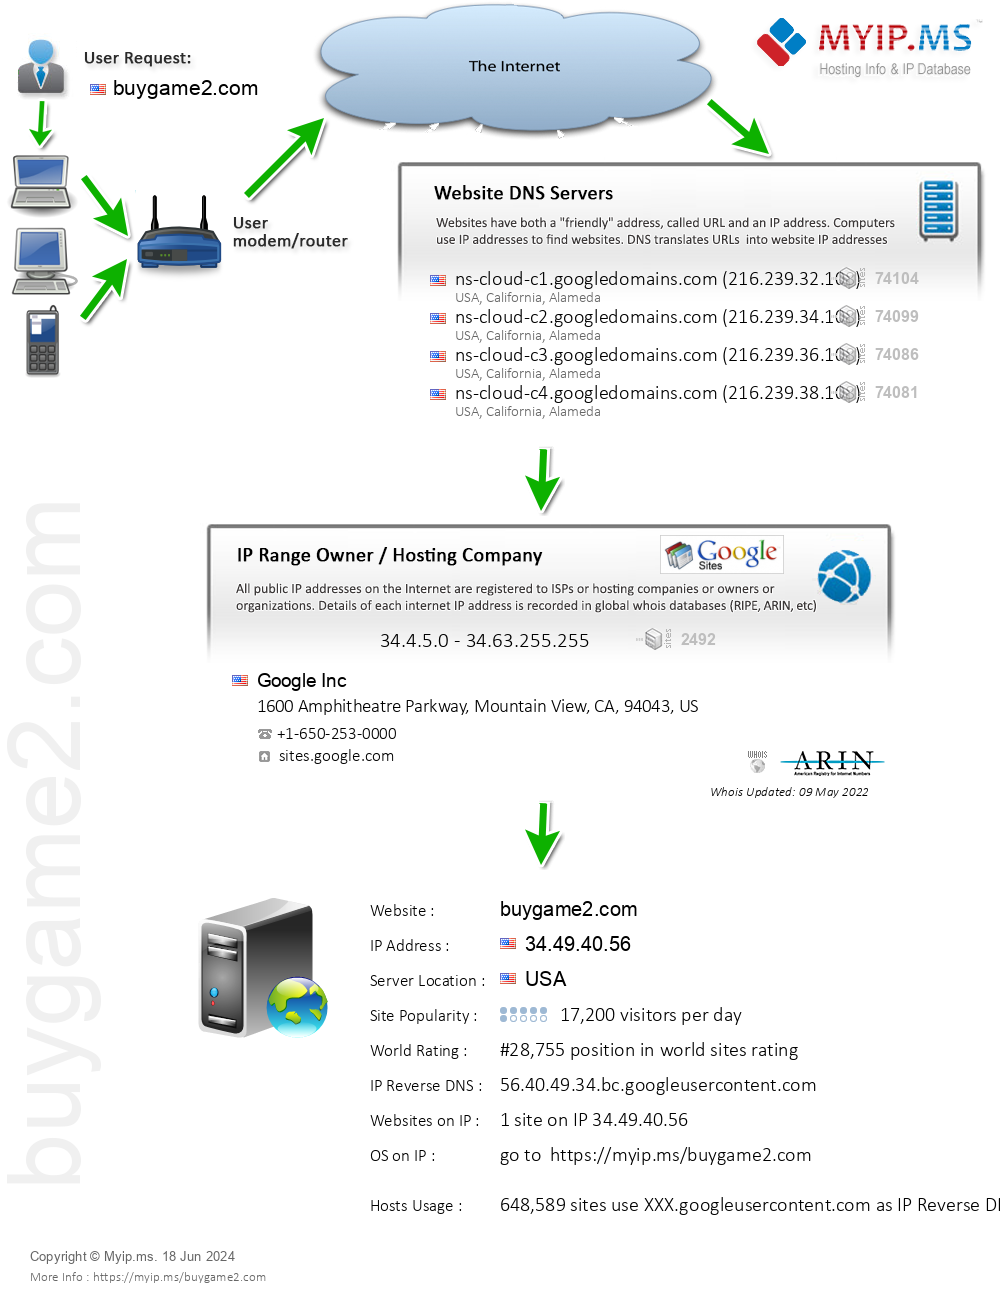 Buygame2.com - Website Hosting Visual IP Diagram